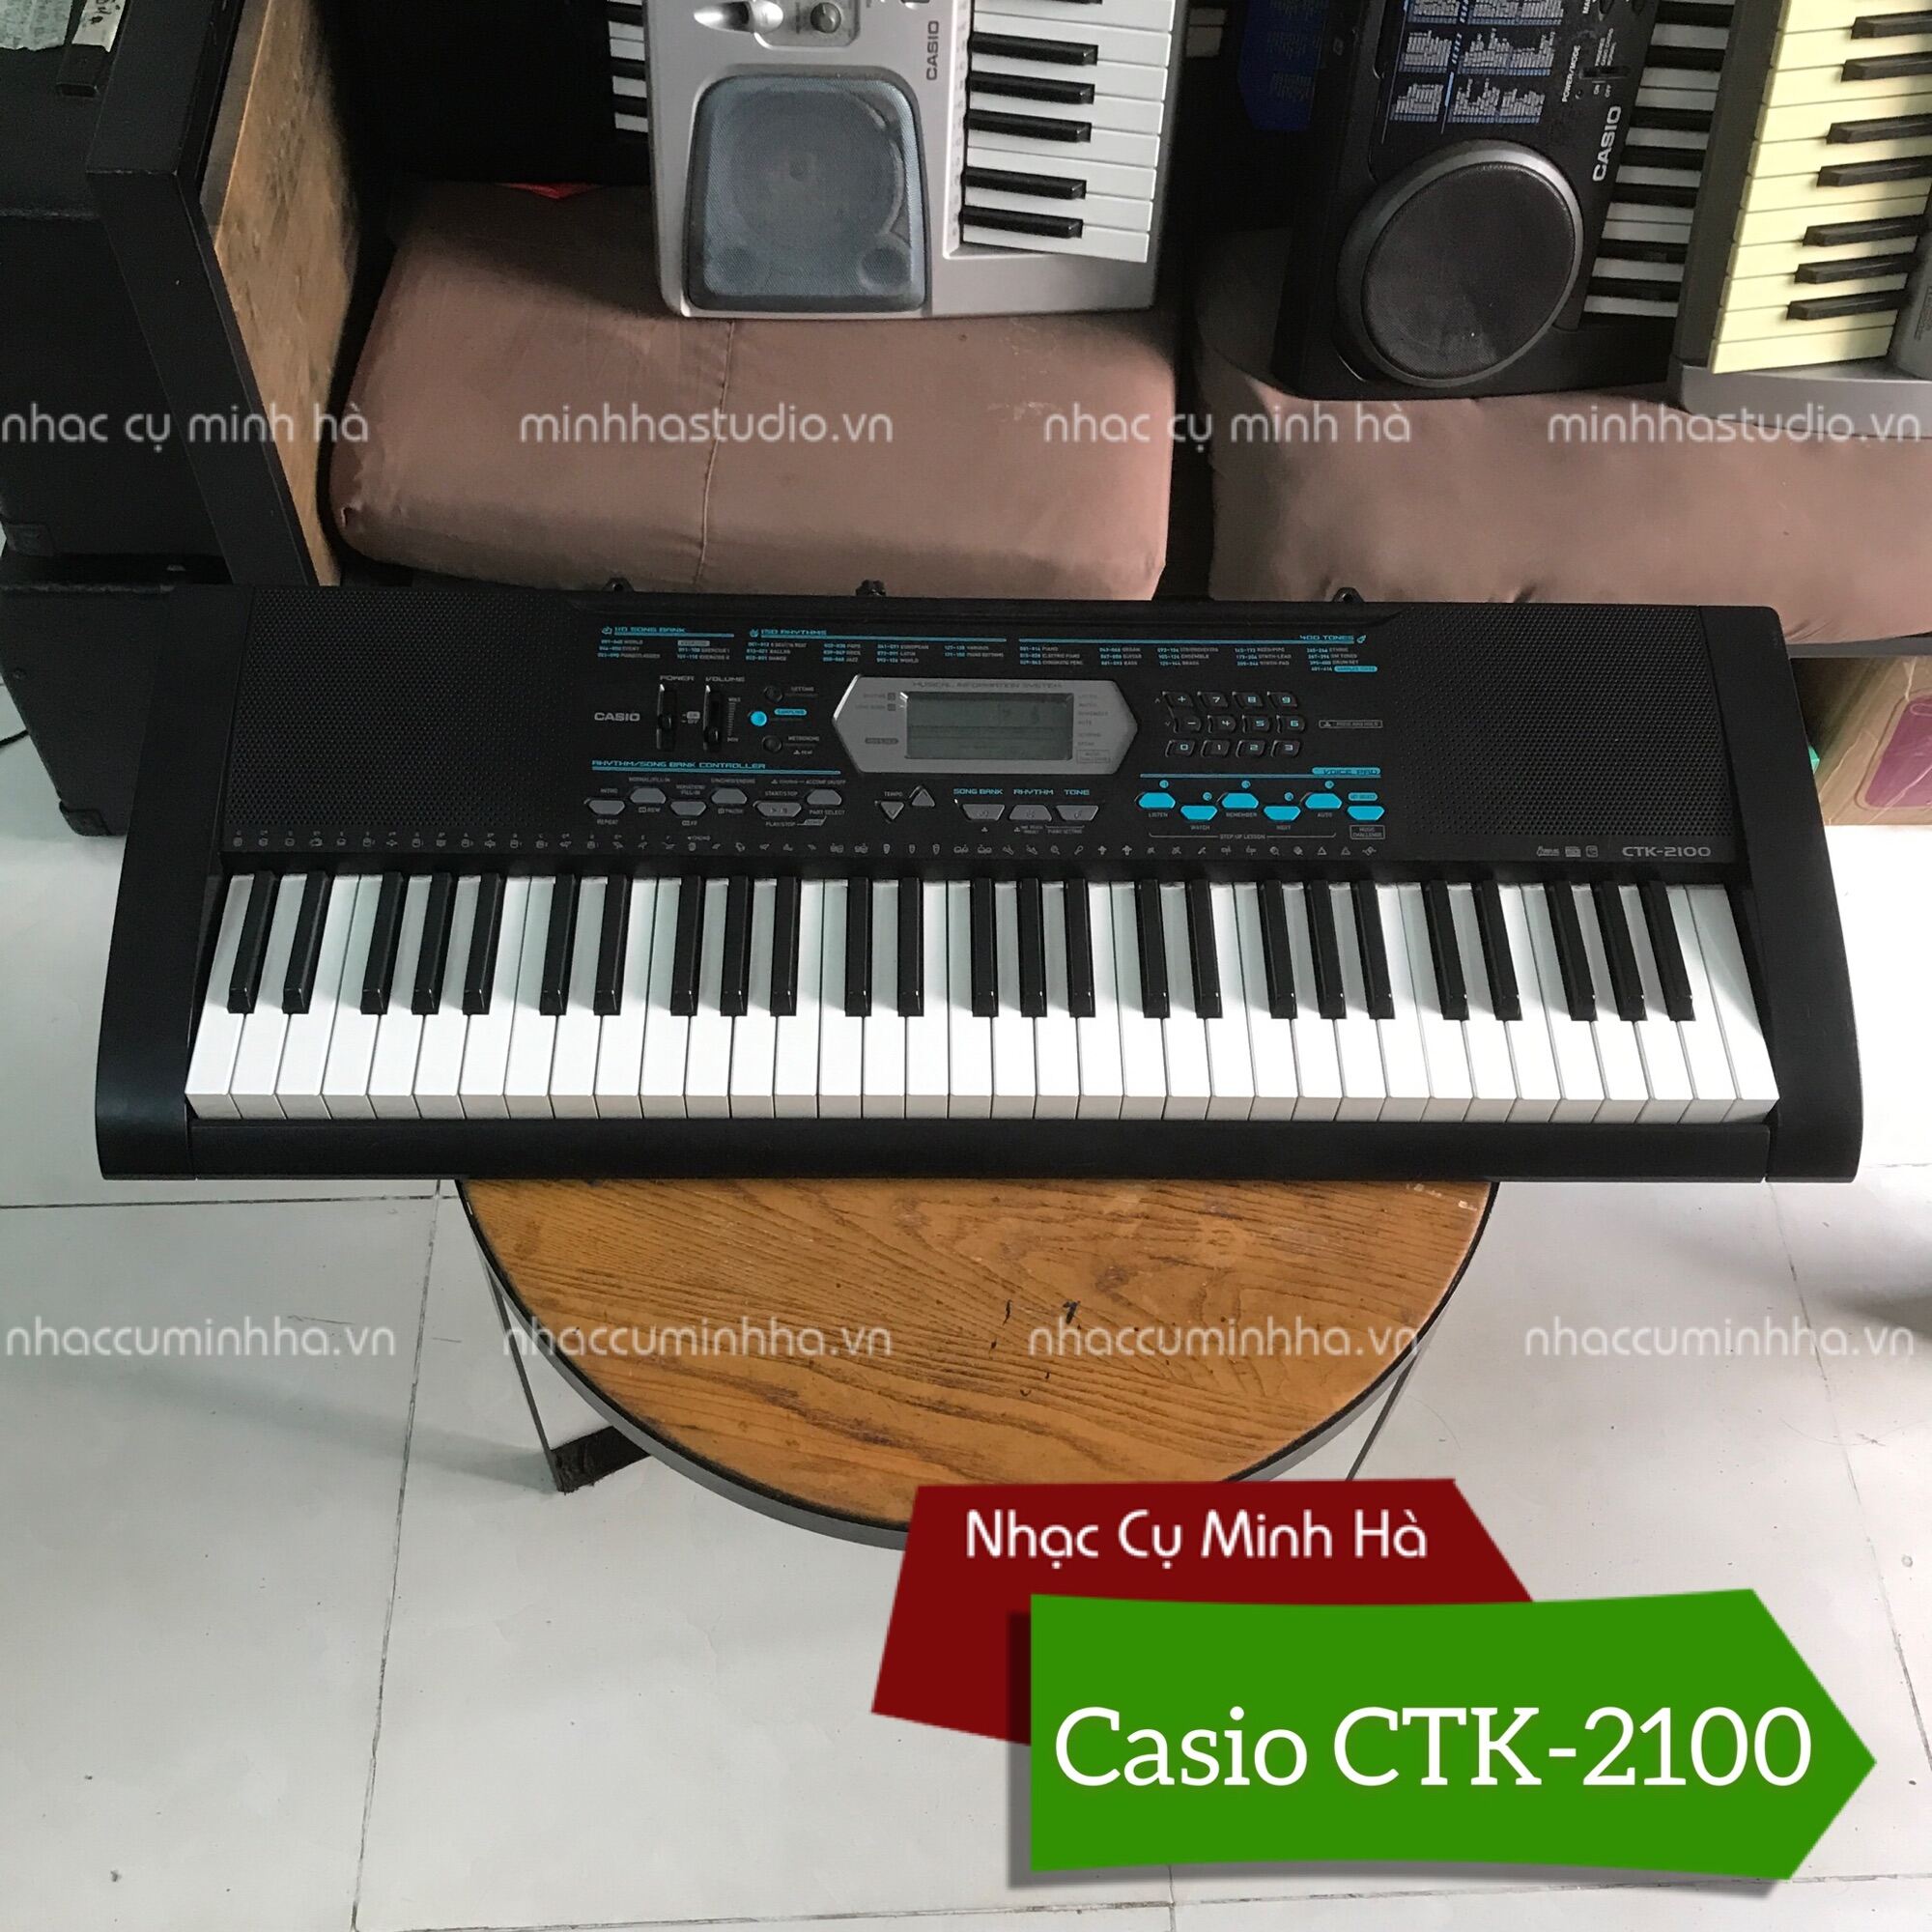 Organ Casio CTK-2100 cao cấp, 61 phím cảm ứng, 400 tiếng, 150 điệu và nhiều chế độ chơi rất hay